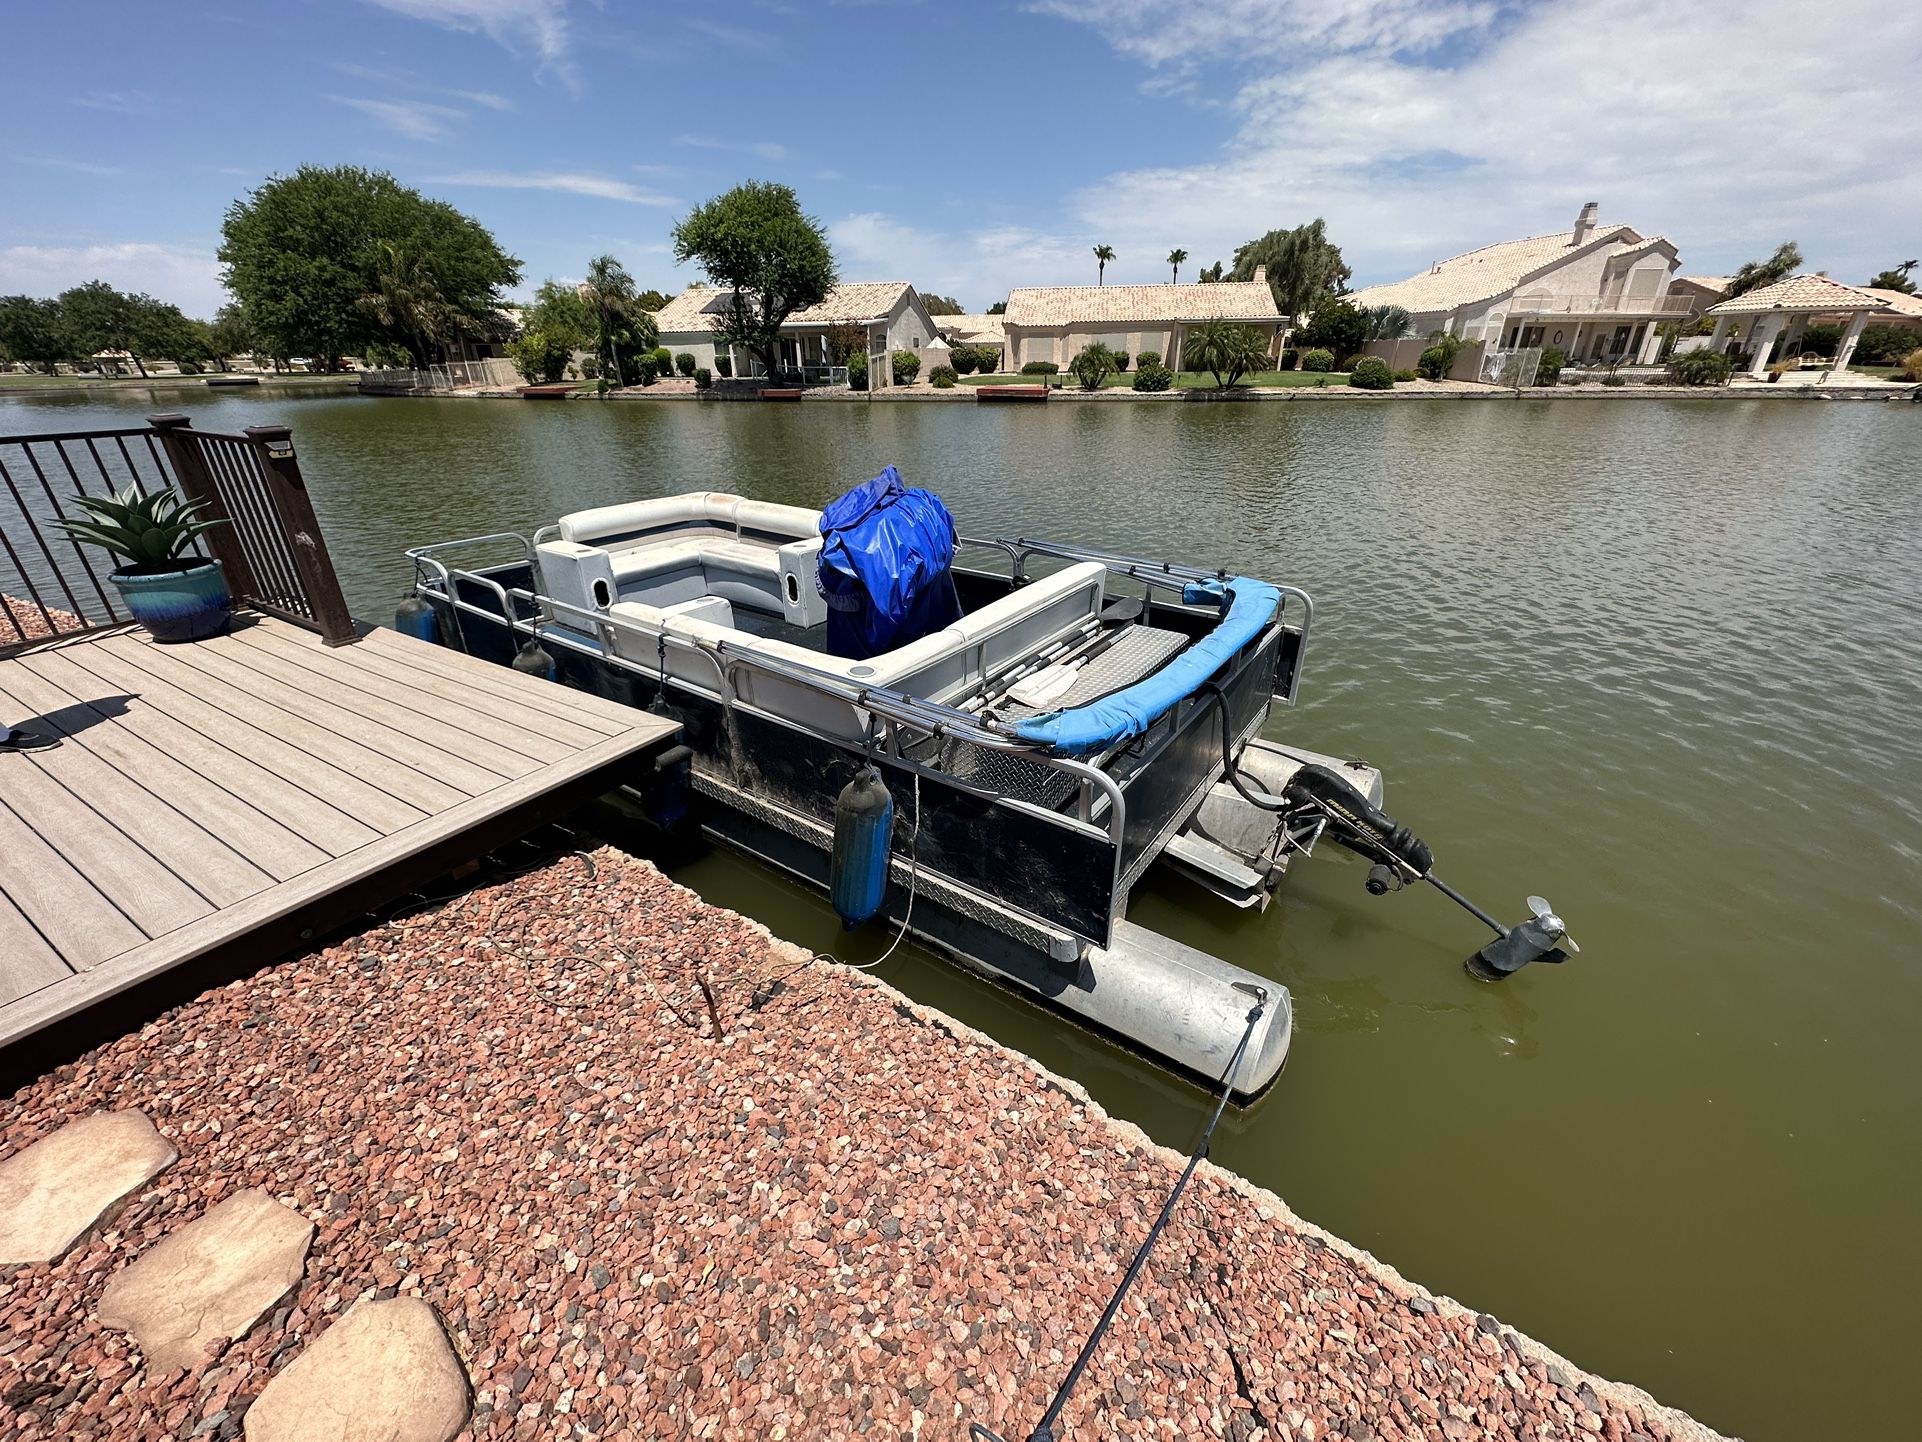 Pontoon Boat for Sale in Phoenix, AZ - OfferUp